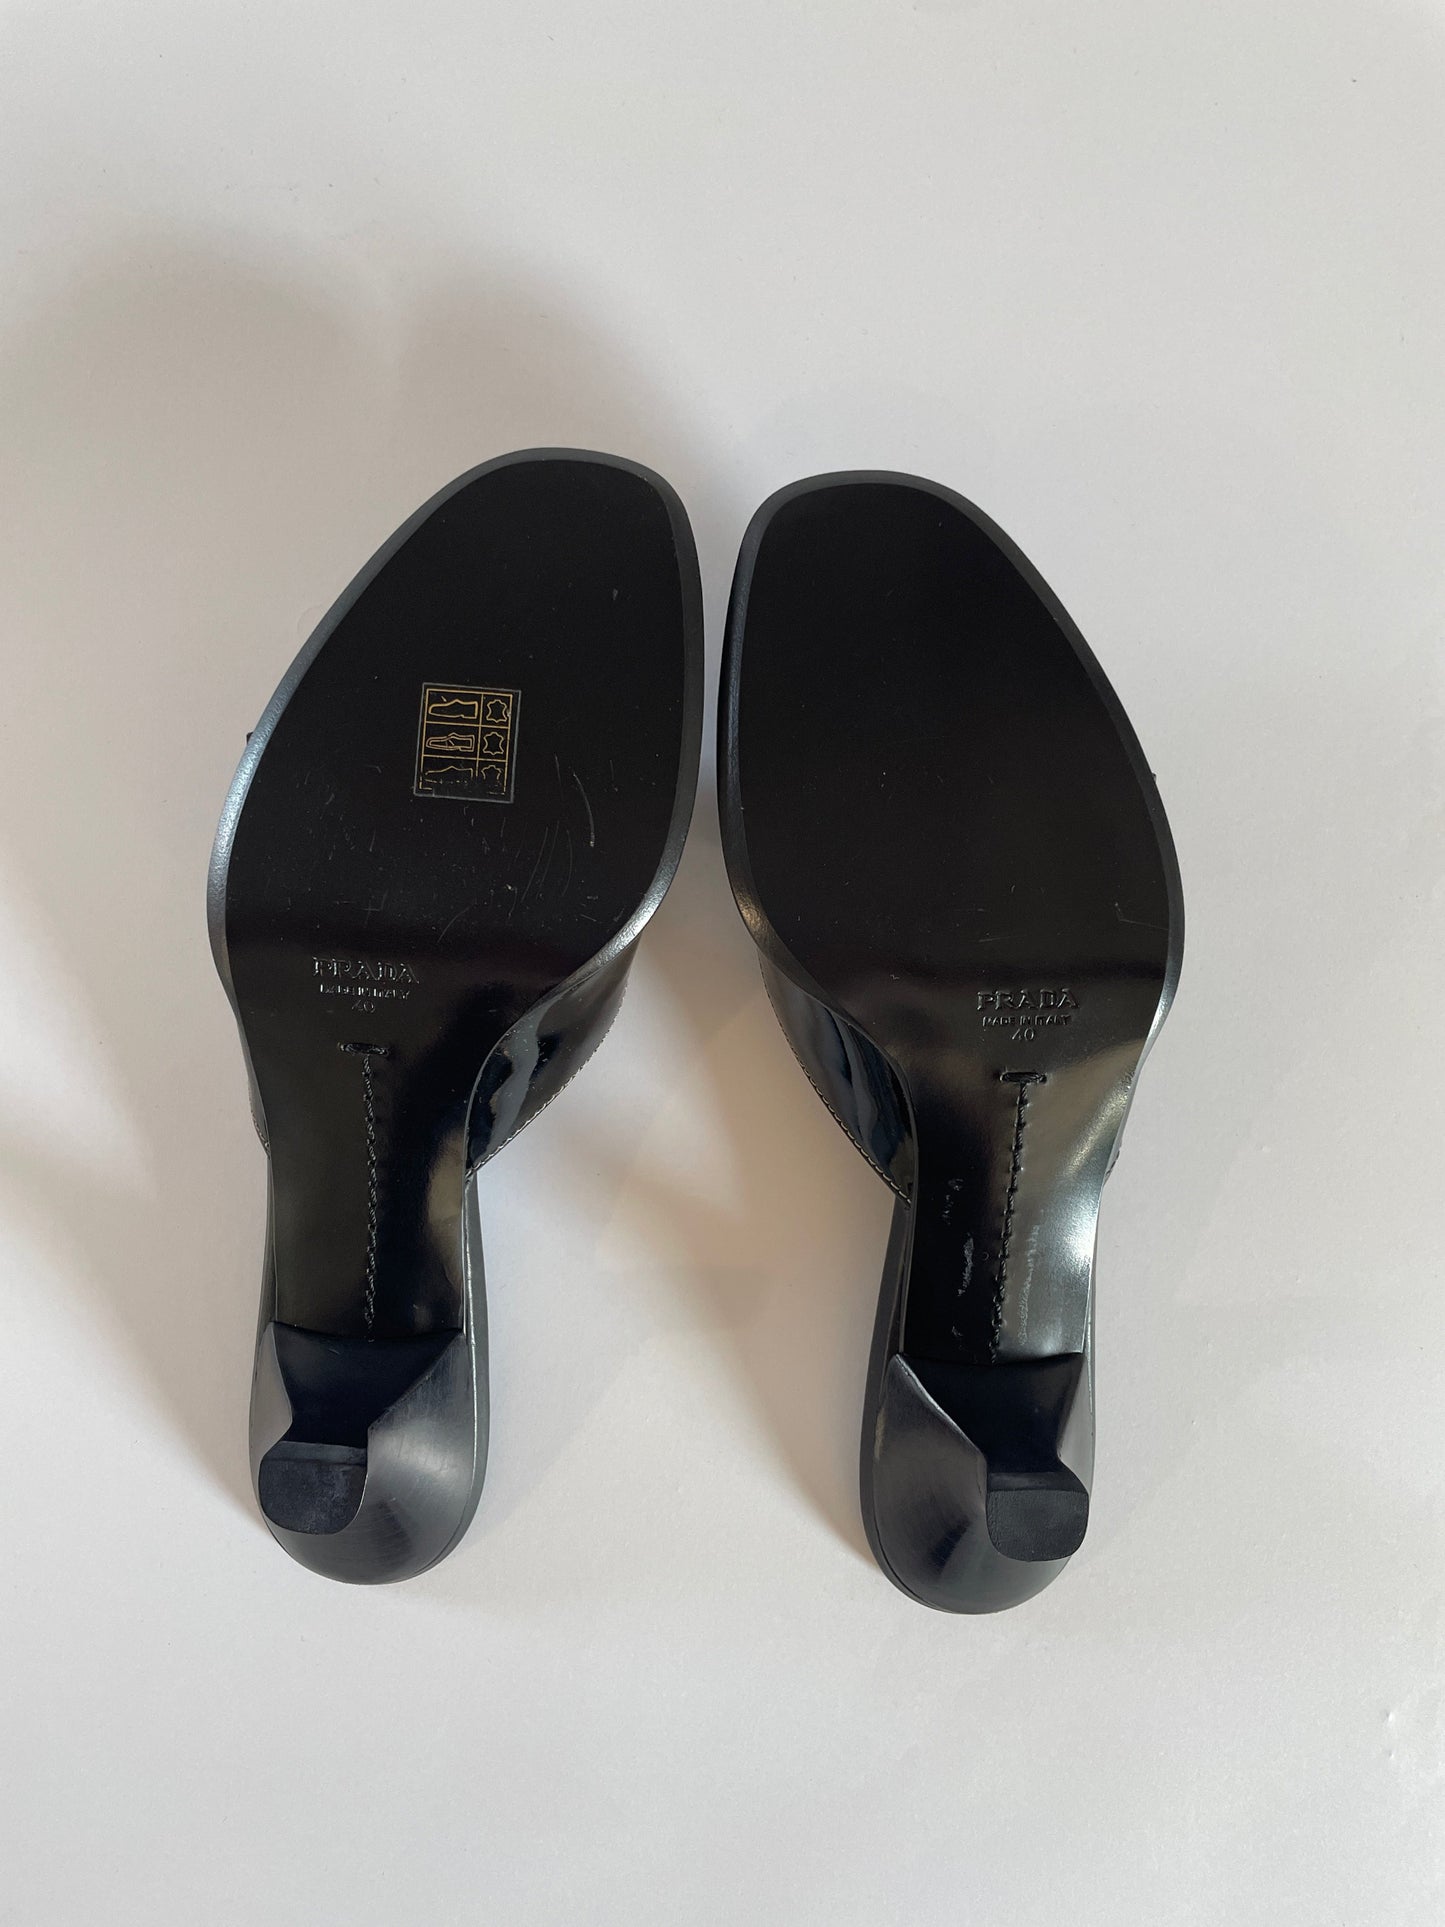 Prada 2000s black big buckle patent leather kitten heels UNWORN (EU 40 / US 9)